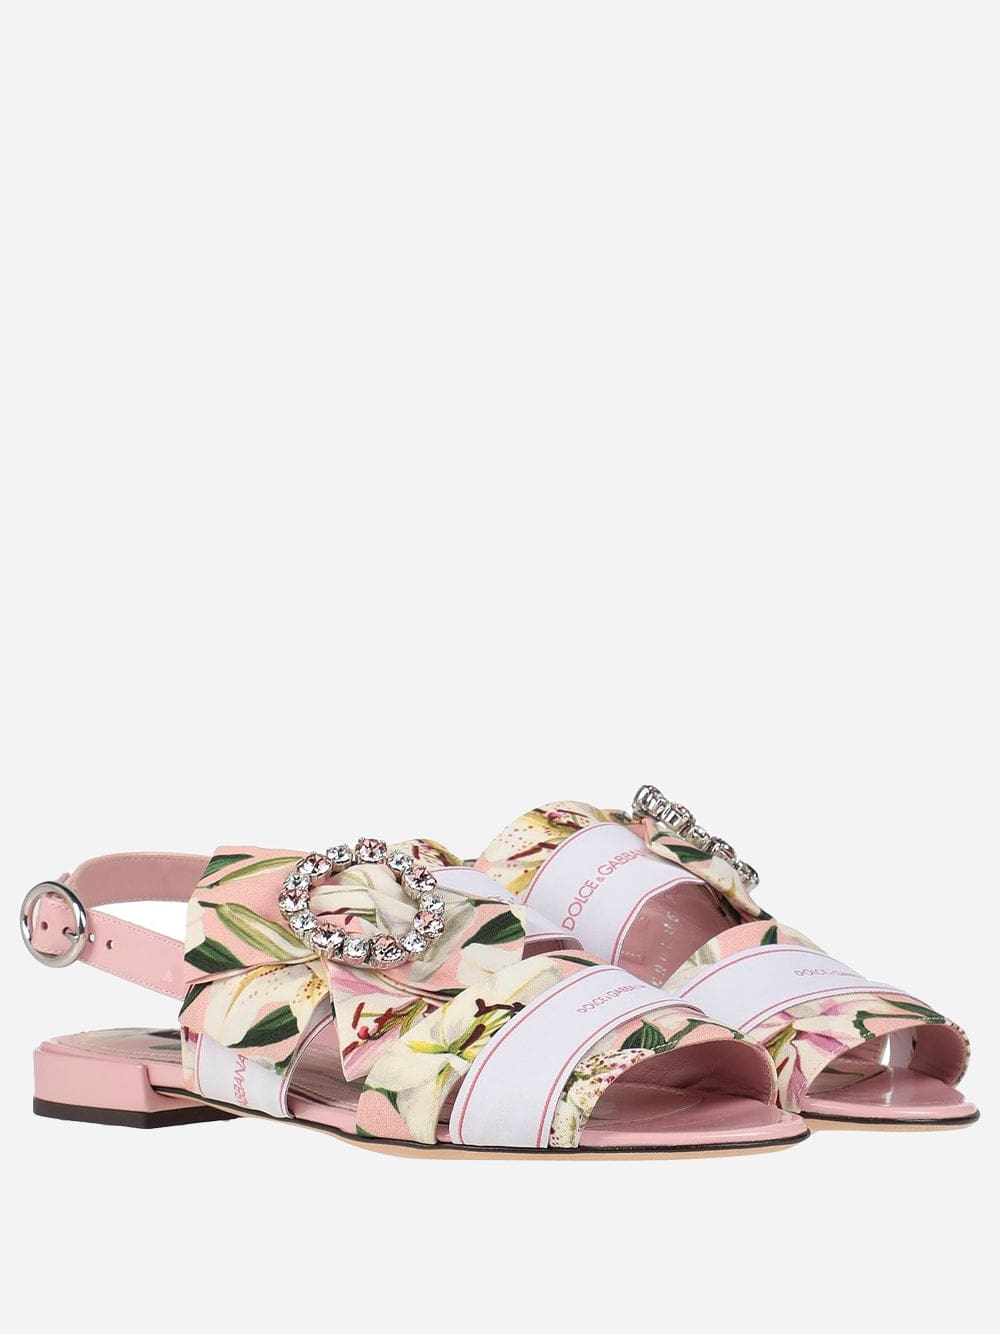 Dolce & Gabbana Floral Crystal Embellished Sandals